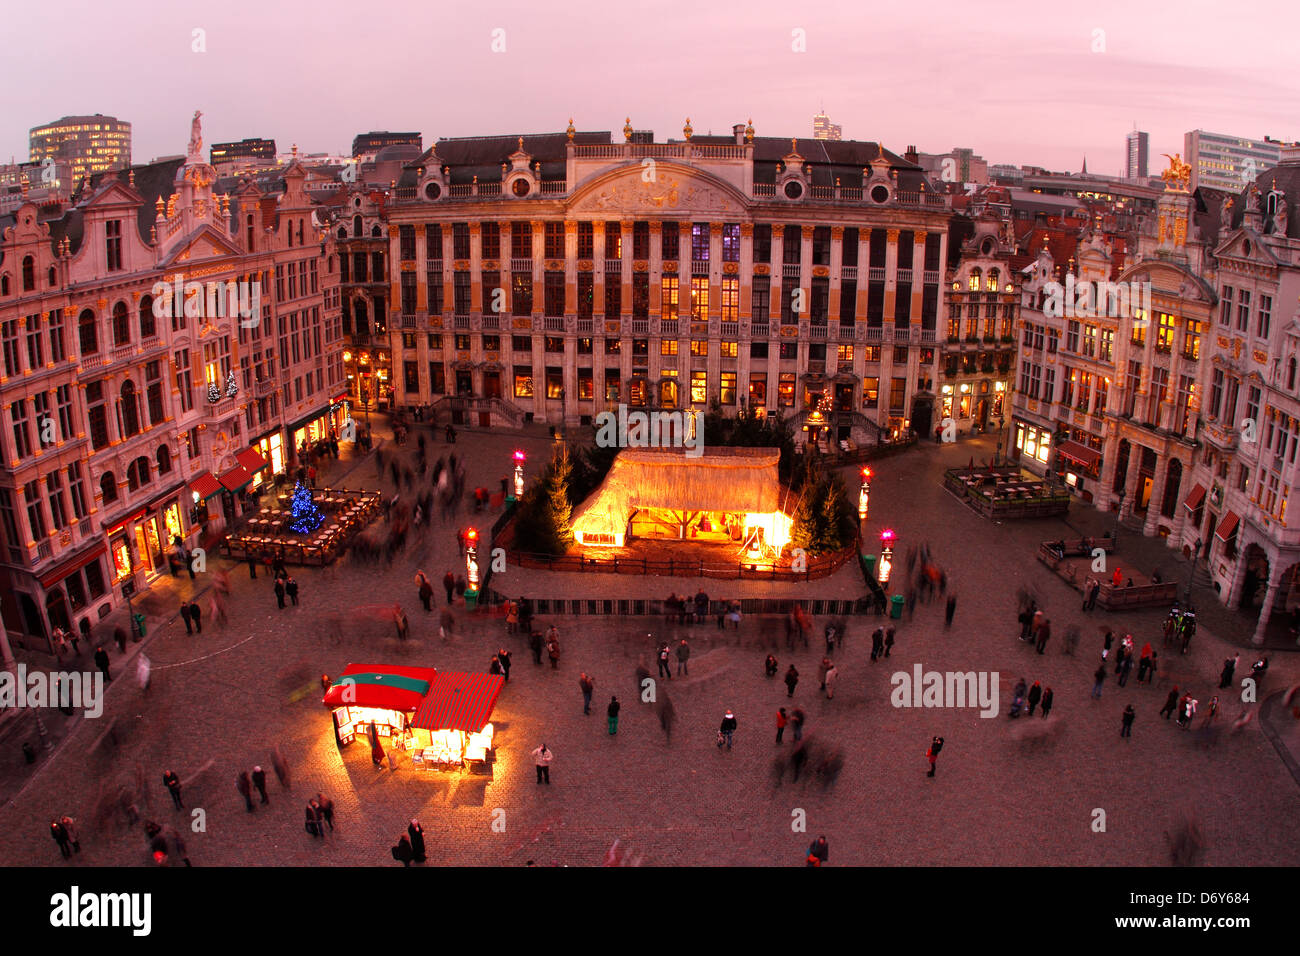 Inspecteren Lijkenhuis spijsvertering Sunset in Grand Place, Brussels, Belgium Stock Photo - Alamy